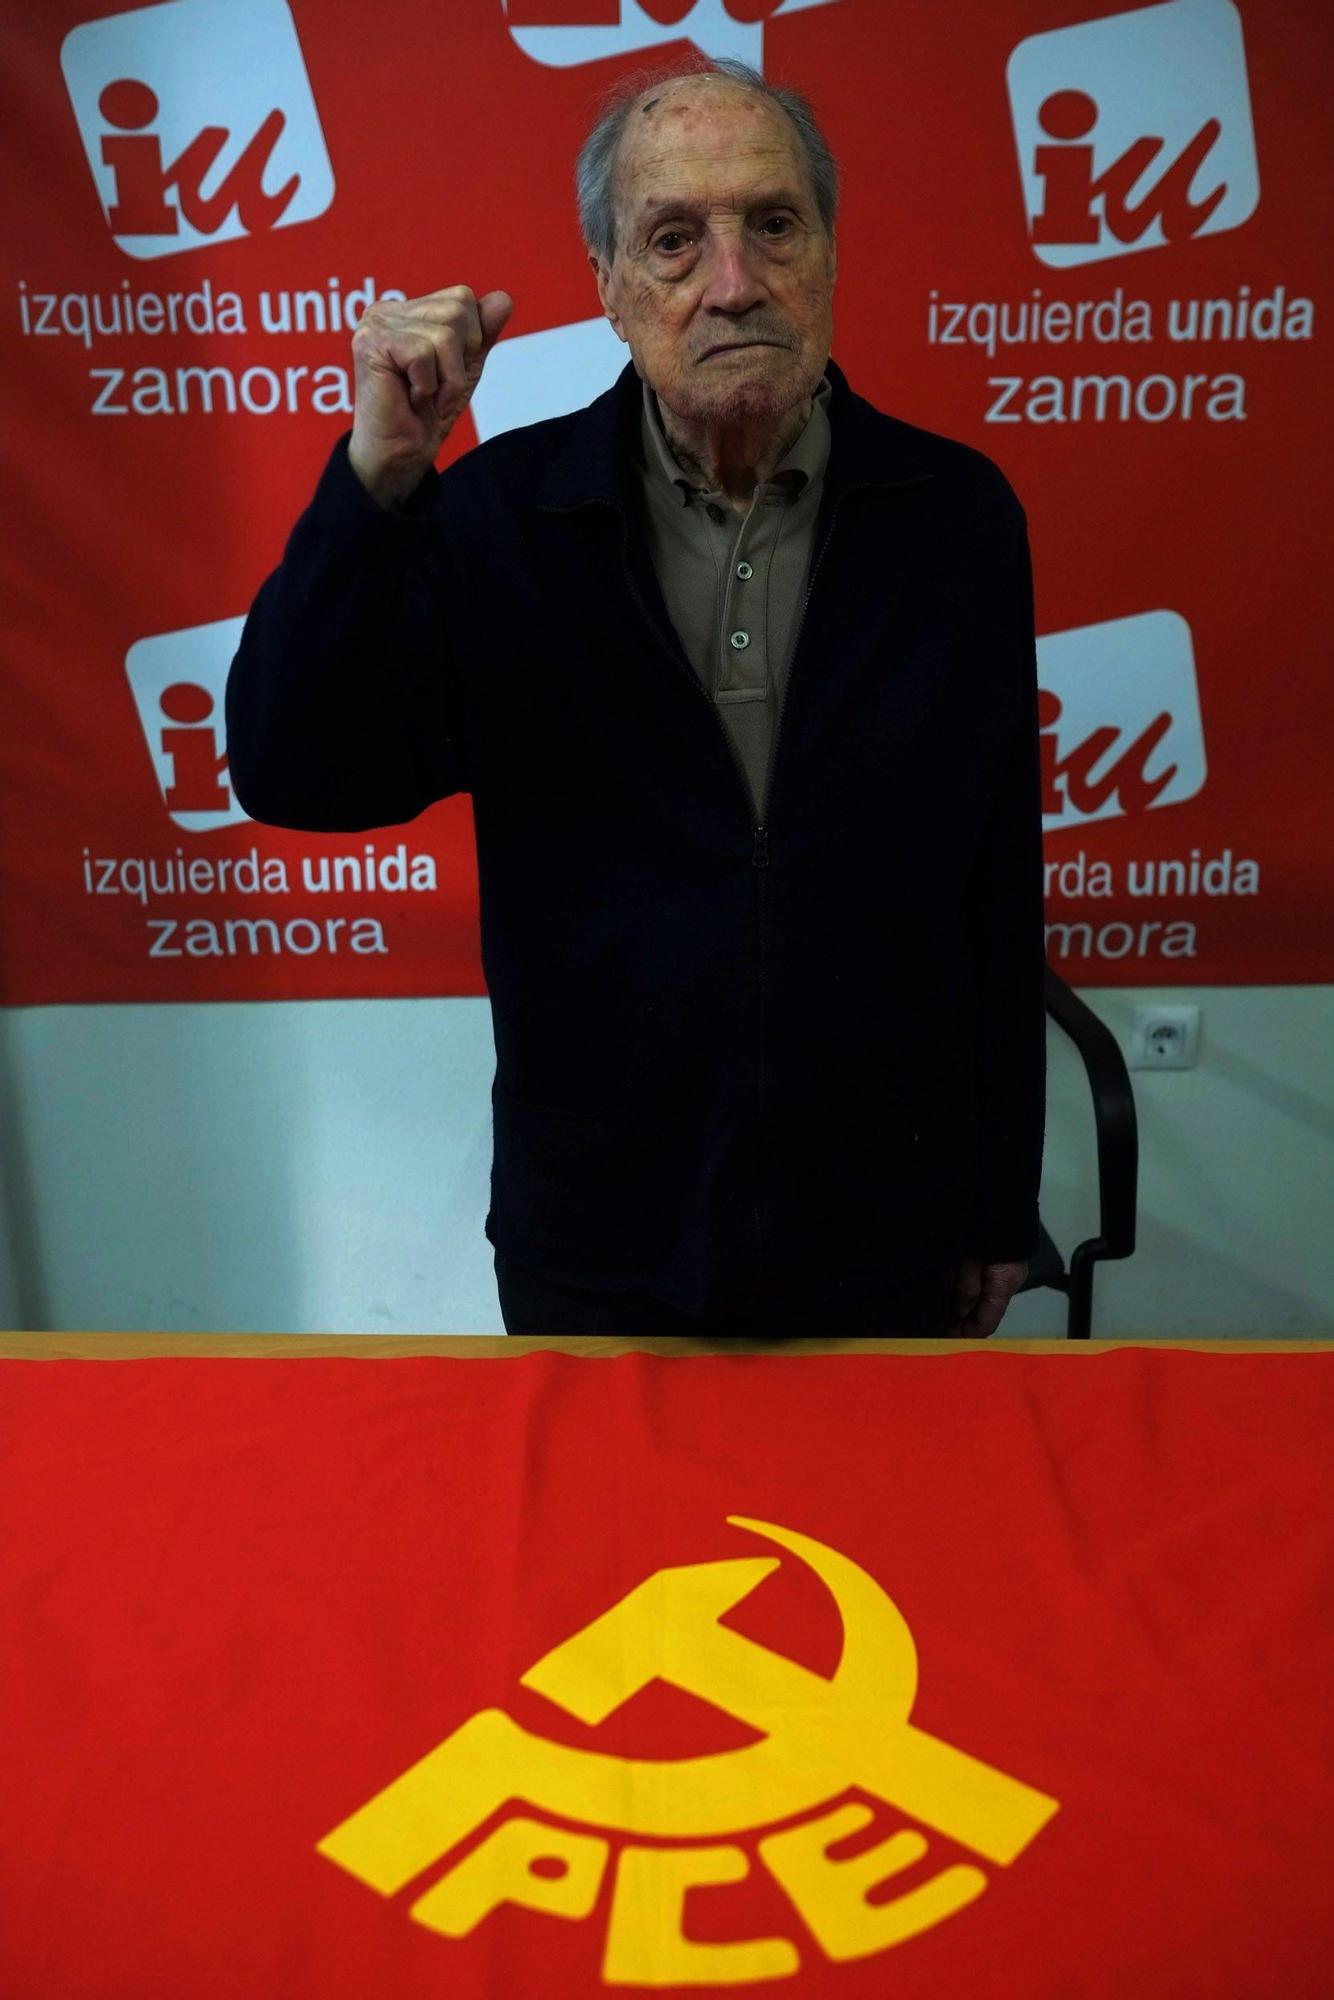 Fallece Amable García, histórico líder del Partido Comunista y de IU en Zamora